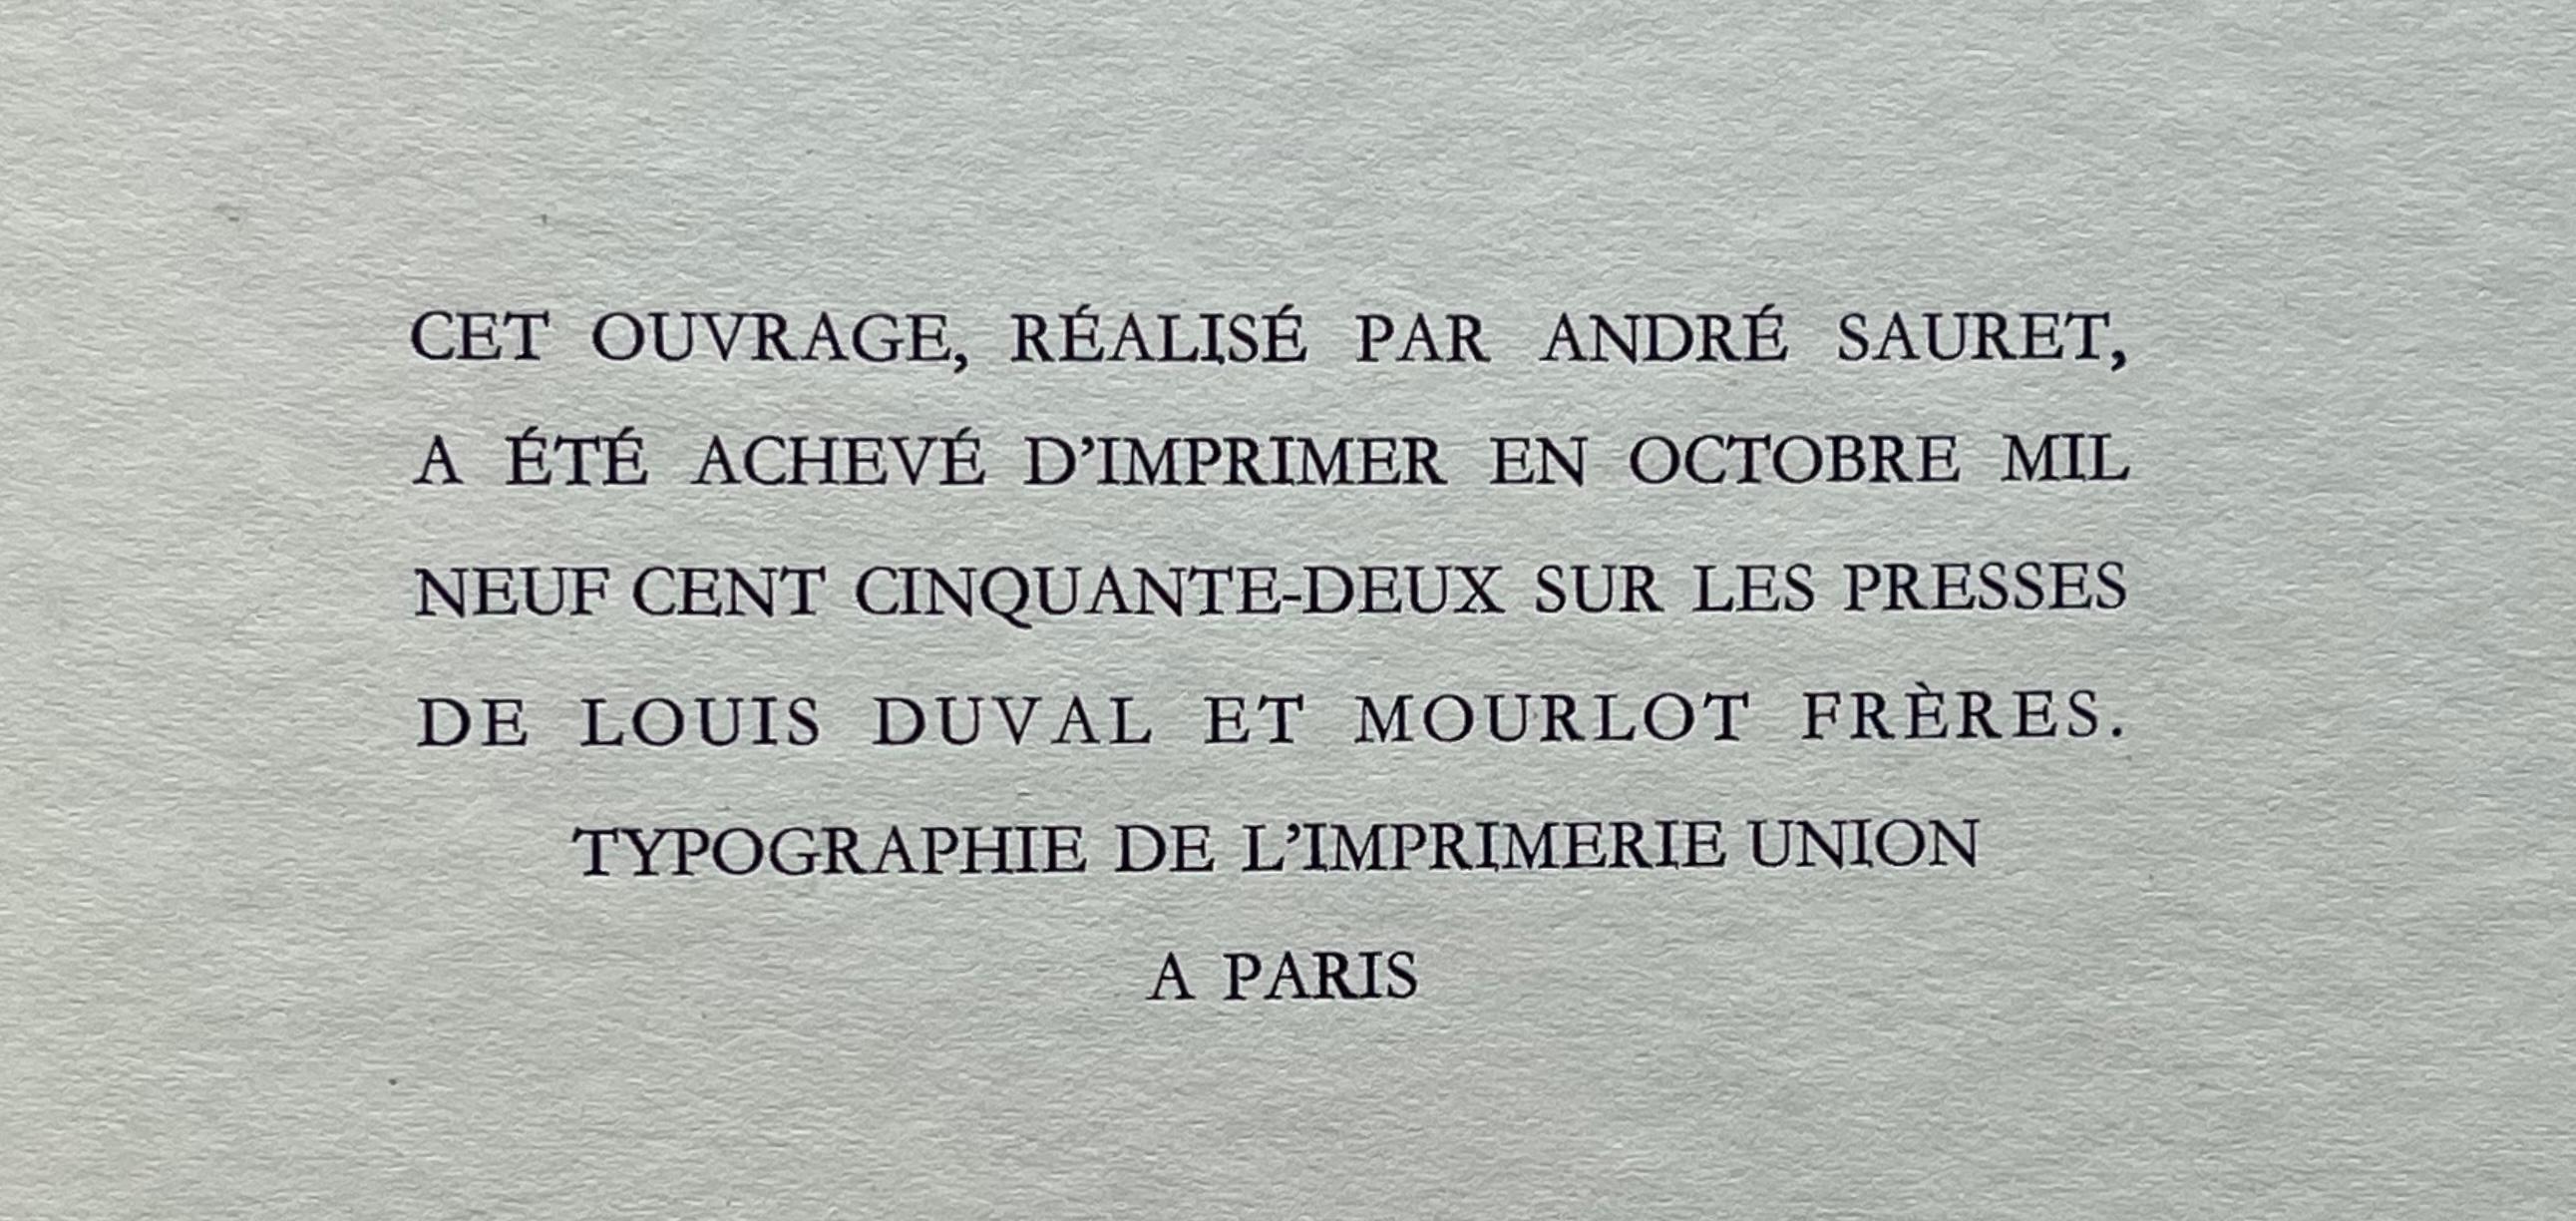 Toulouse-Lautrec, Dans les coulisses, The Circus by Toulouse-Lautrec (after) For Sale 4